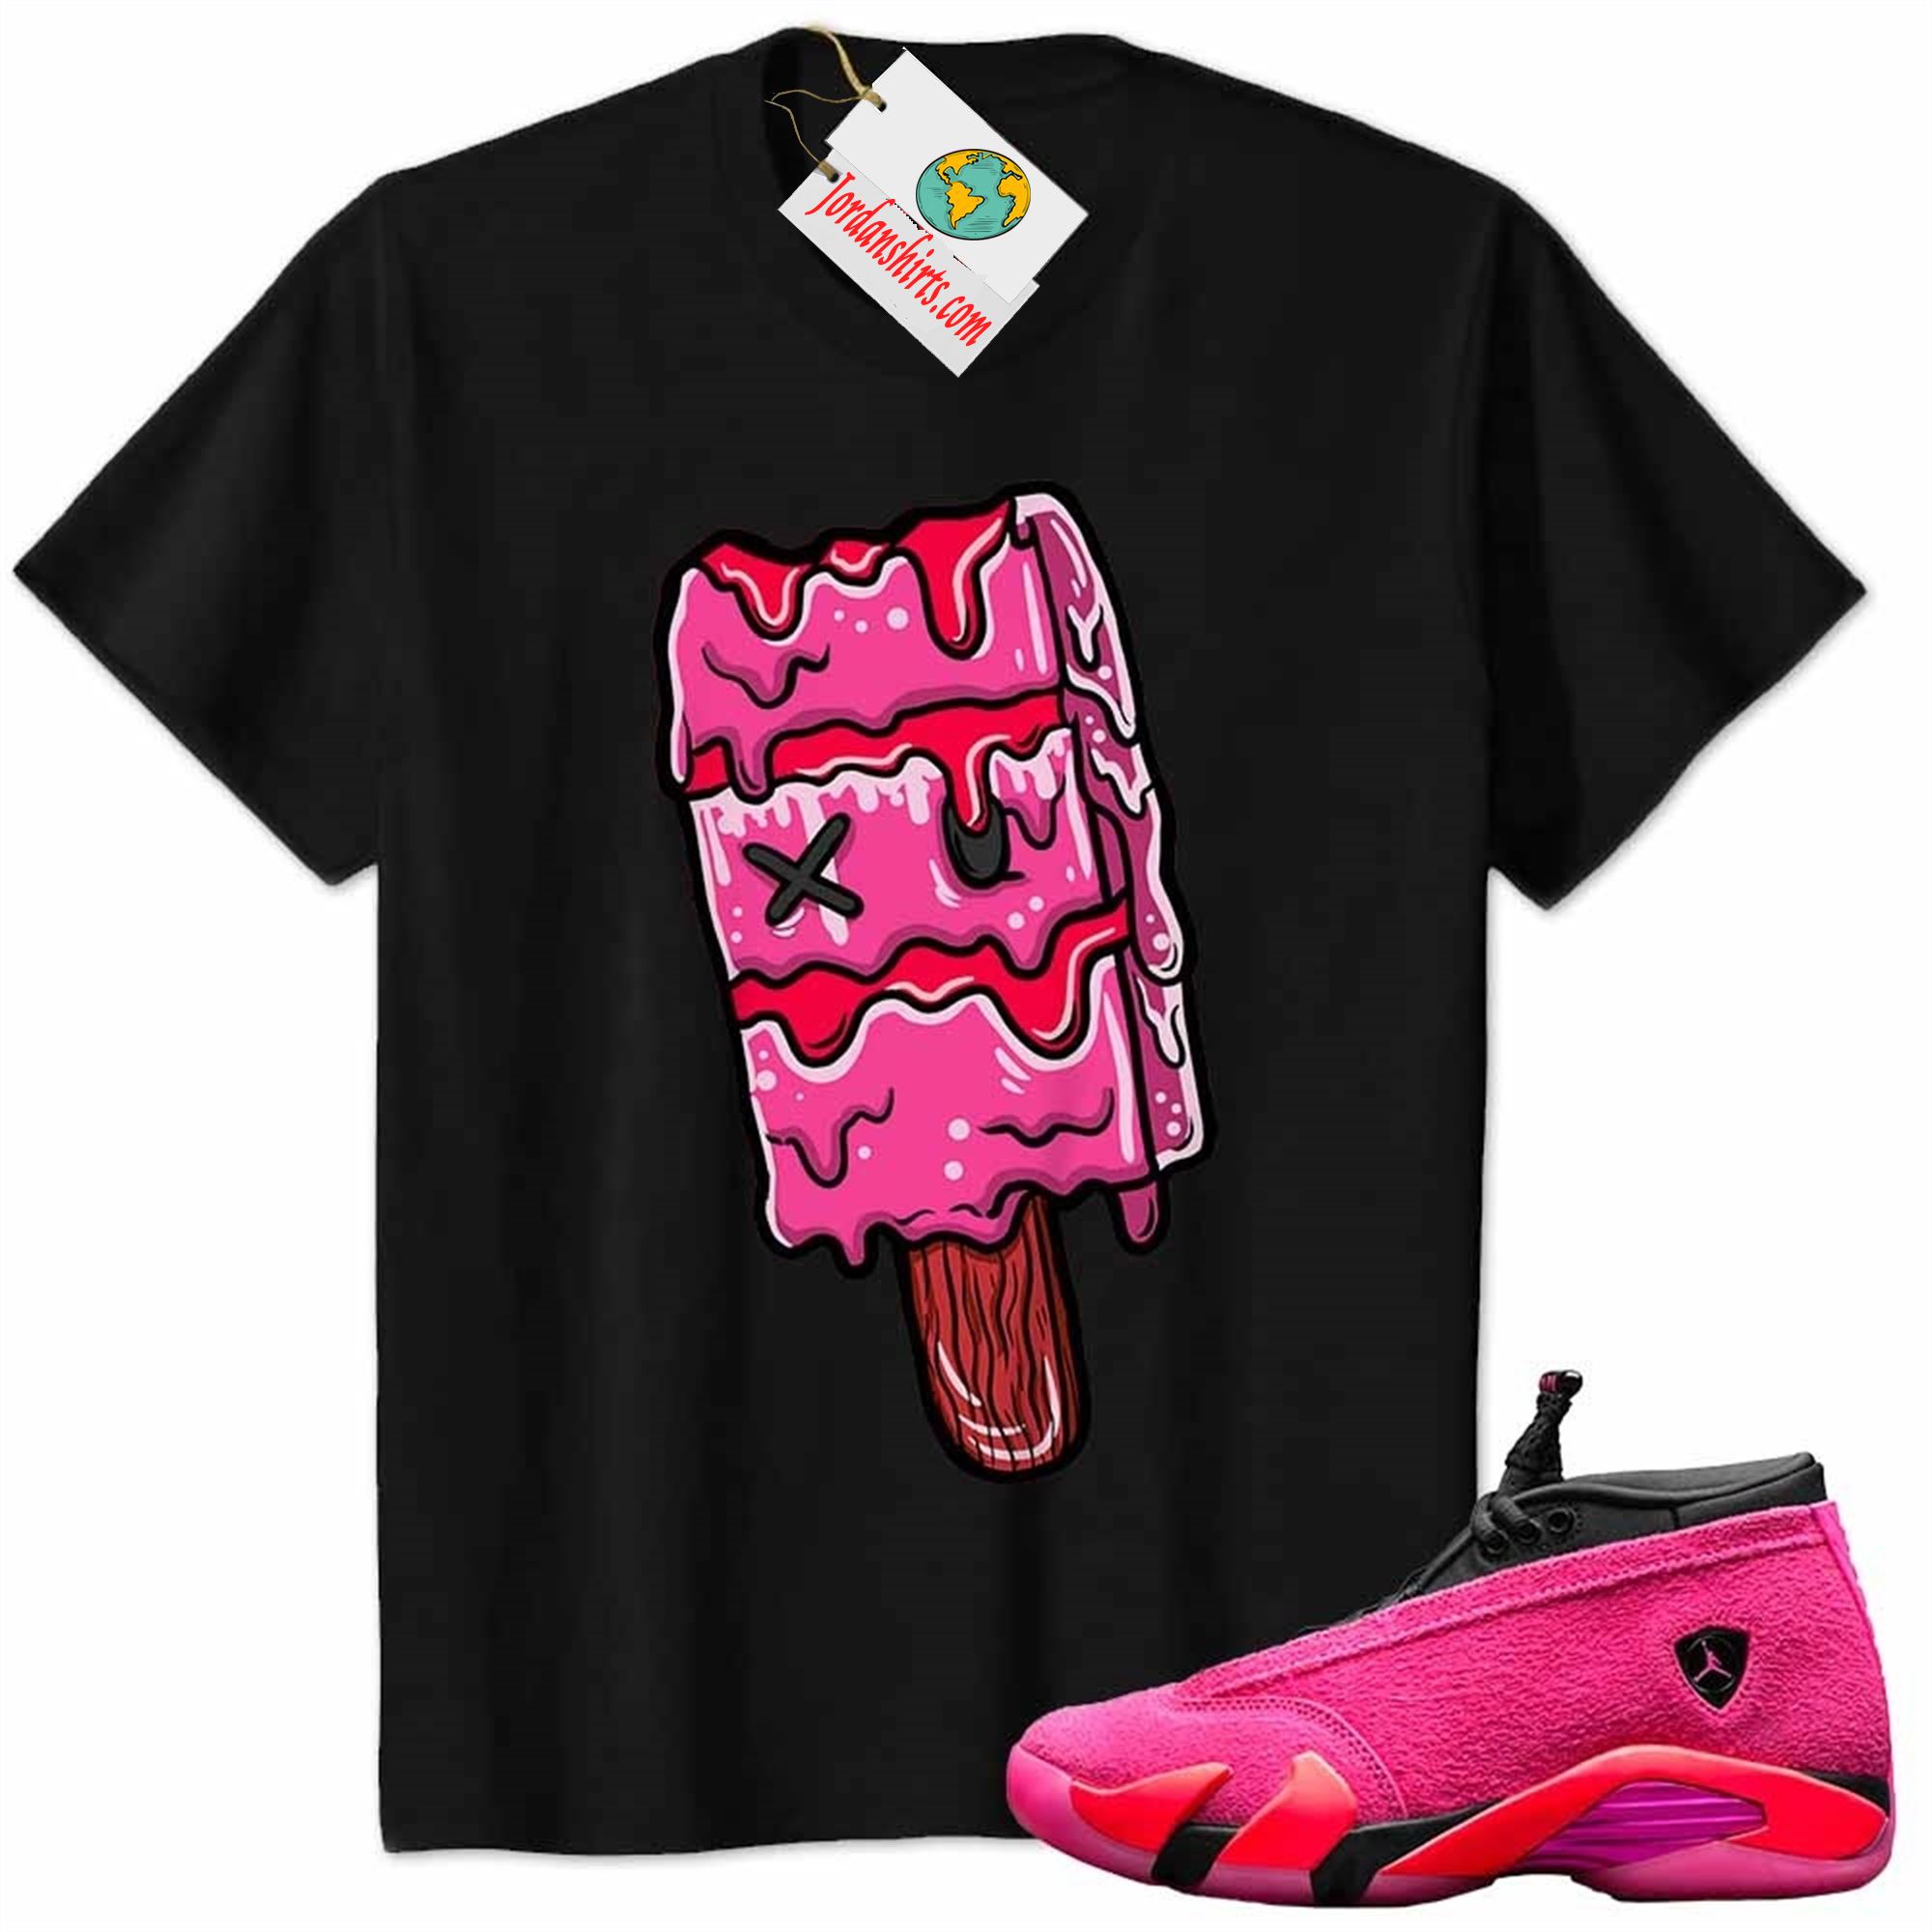 Jordan 14 Shirt, Ice Cream Dripping Black Air Jordan 14 Wmns Shocking Pink 14s Full Size Up To 5xl